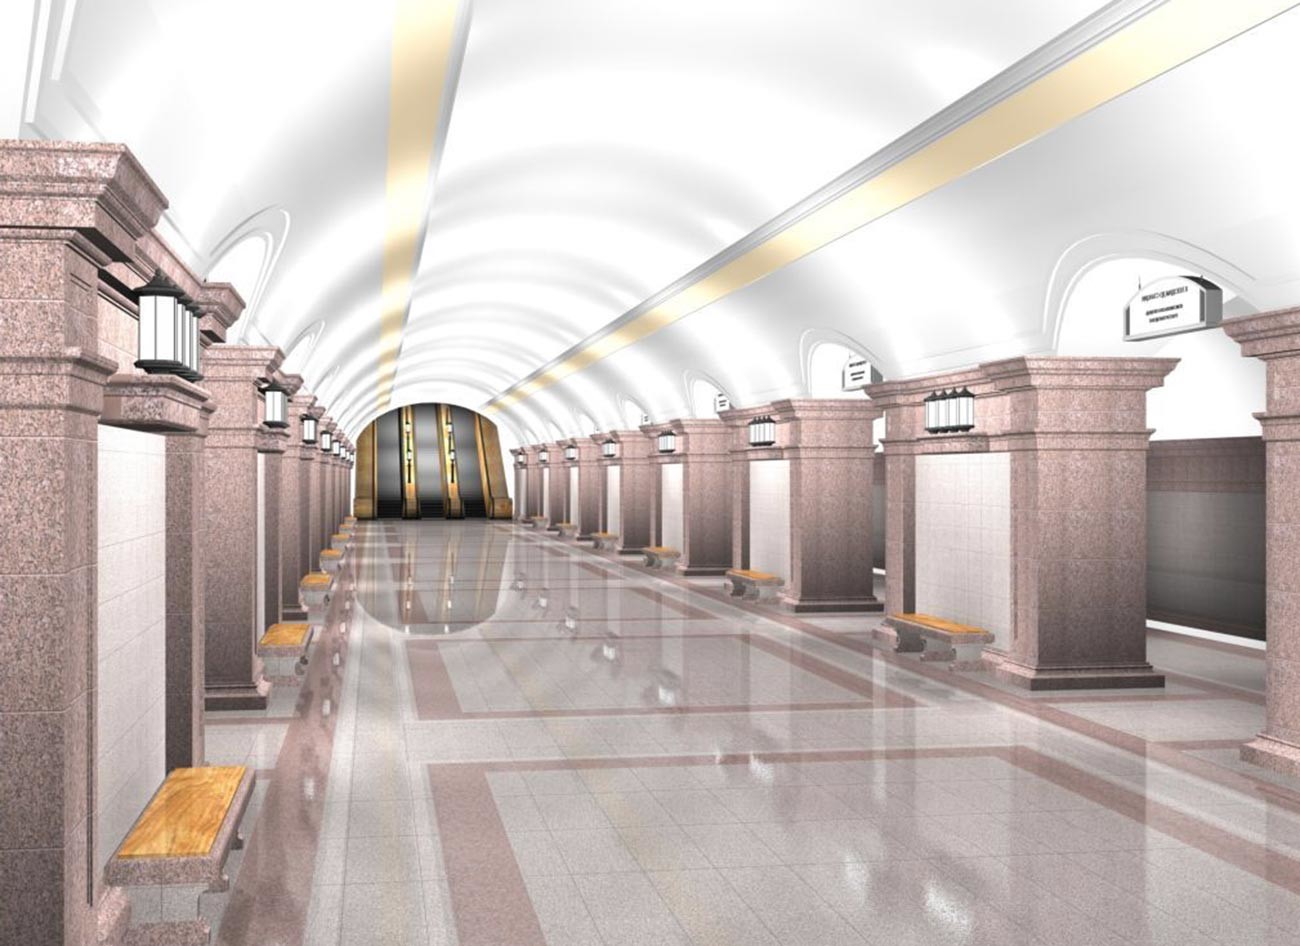 Voici à quoi pourrait ressembler une station de métro de Tcheliabinsk